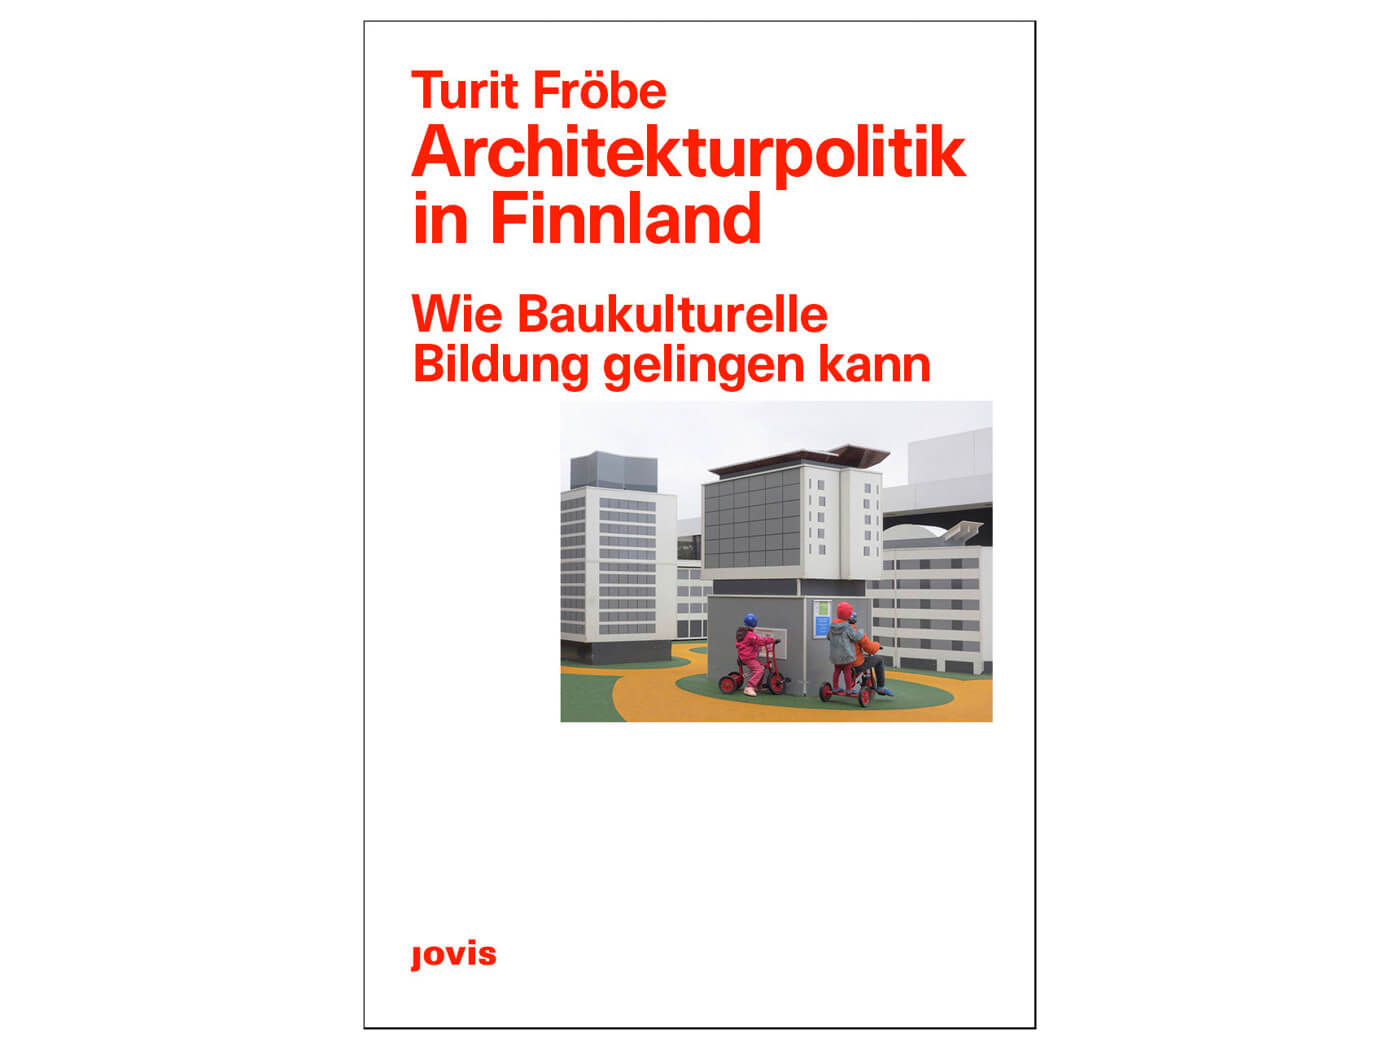 Buch Cover Architekturpolitik in Finnland von Truit Fröbe